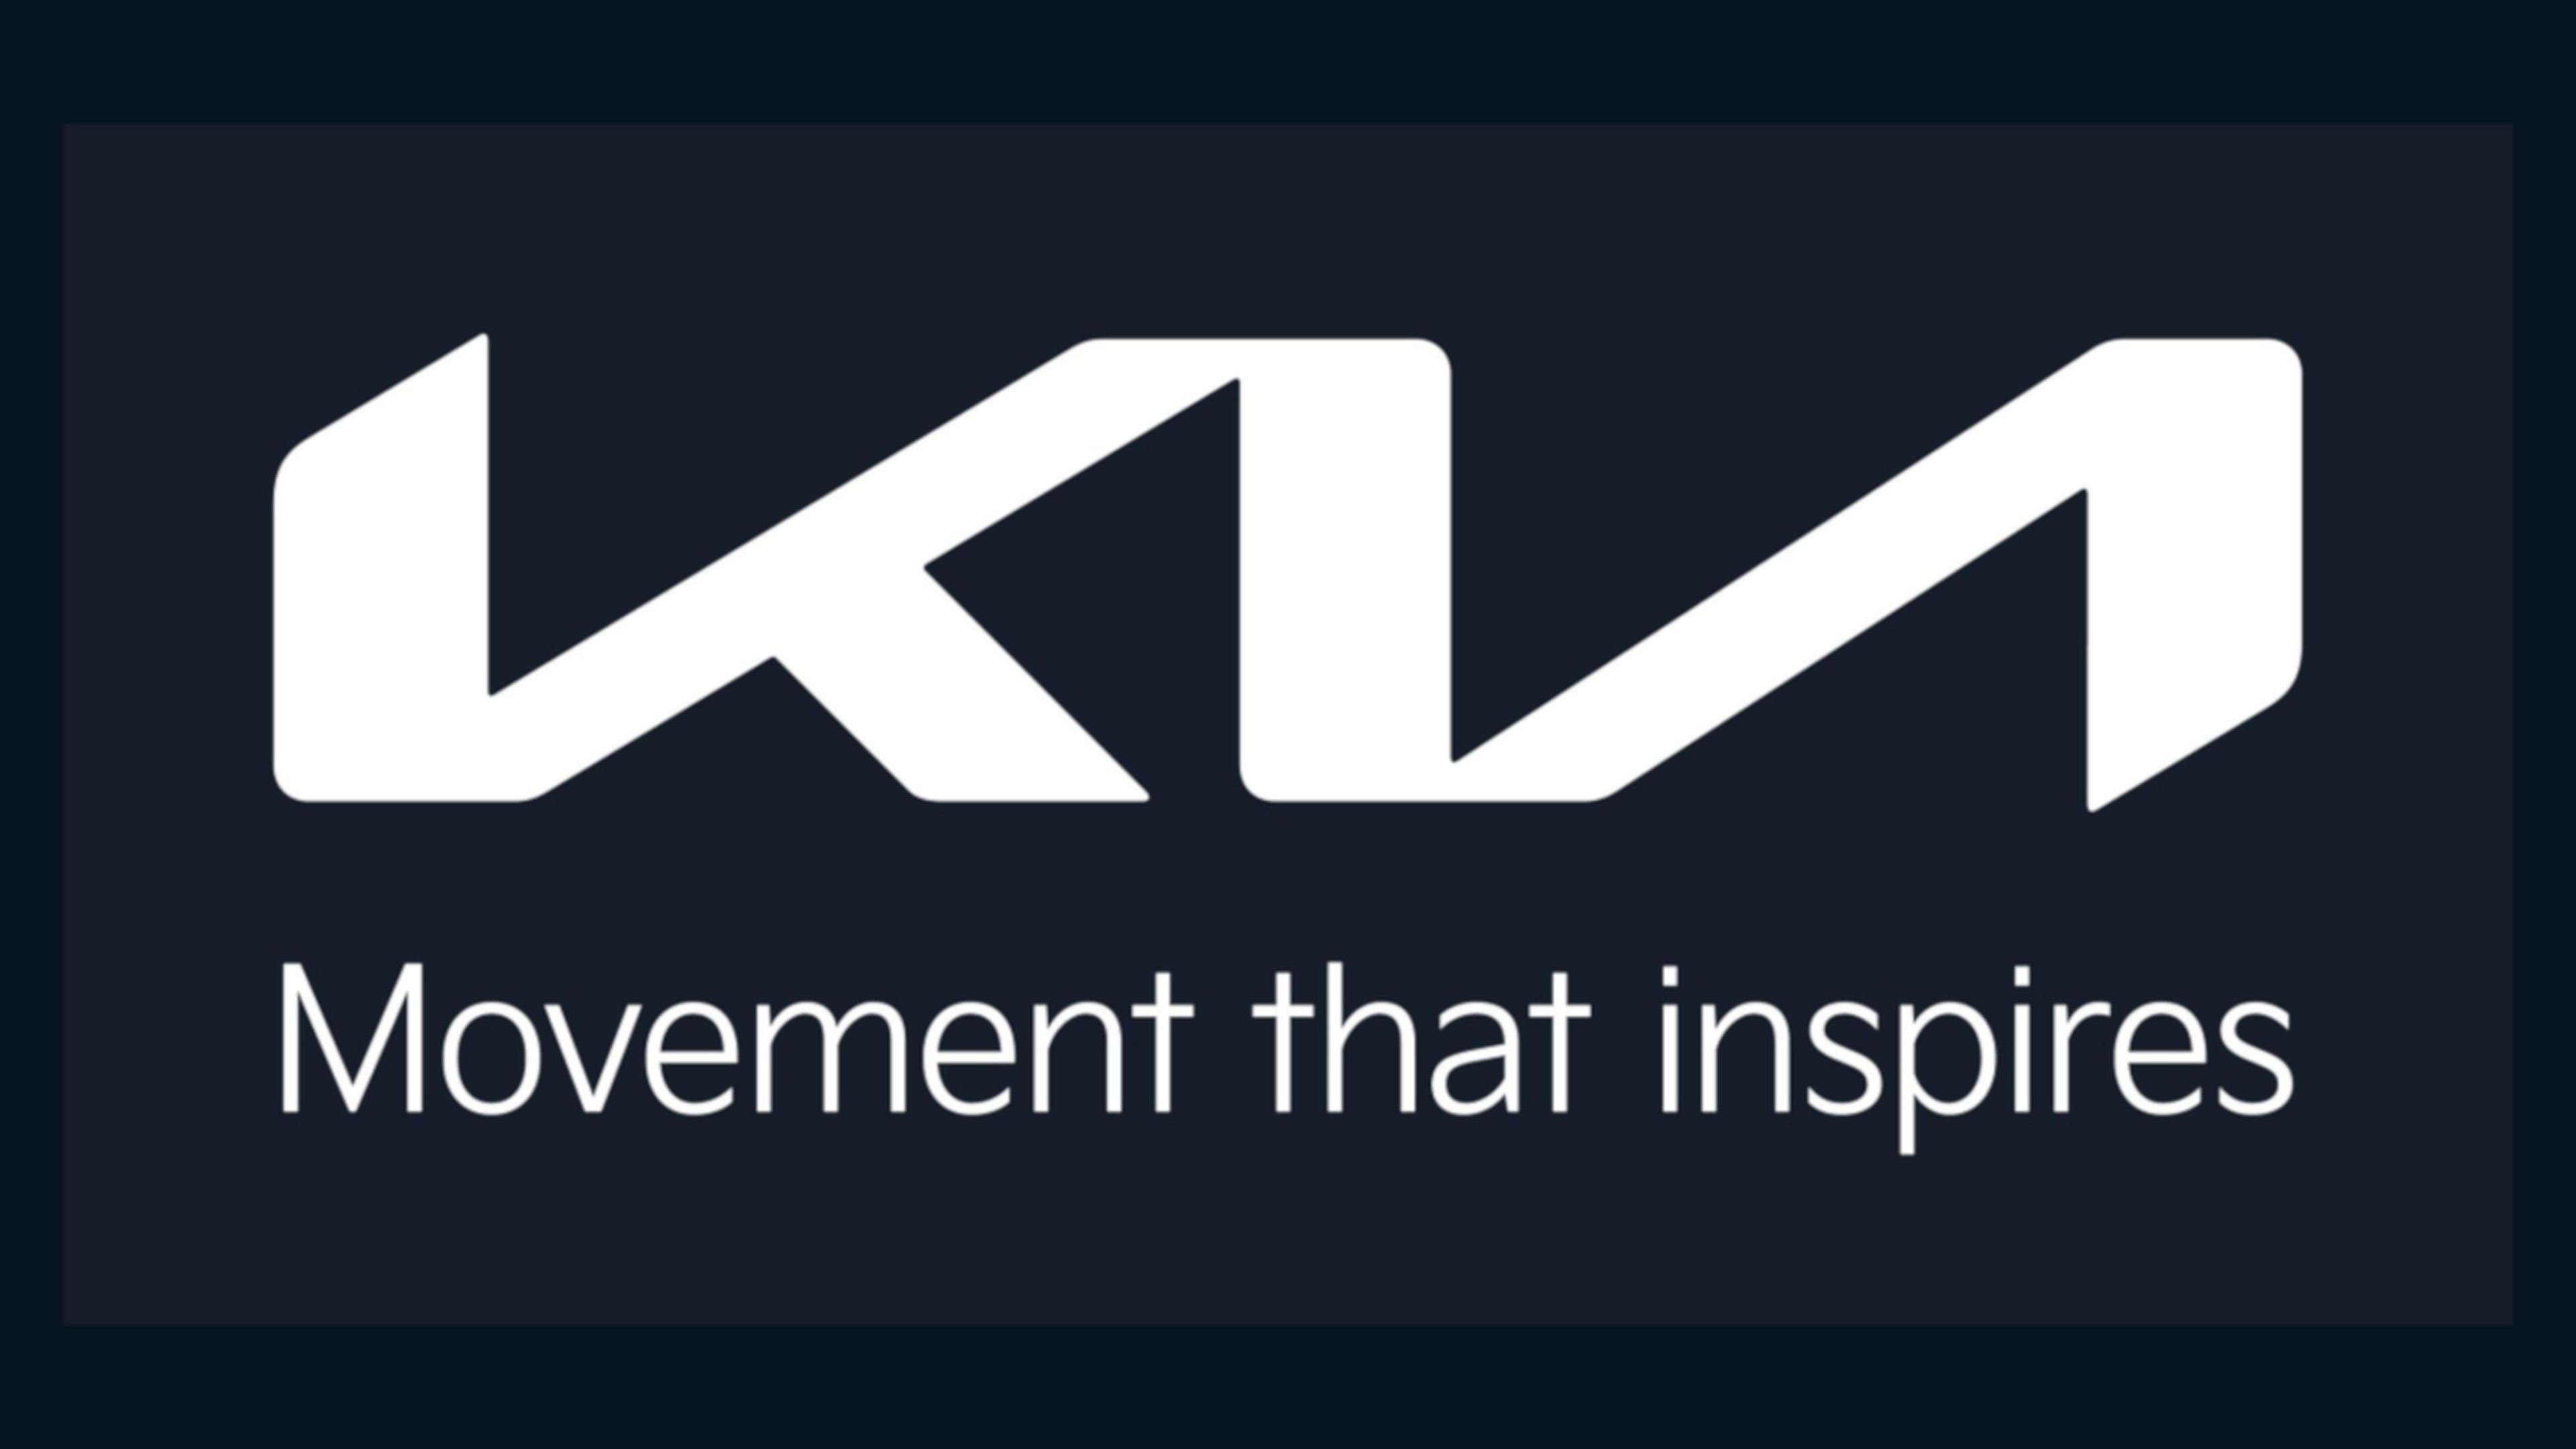 Así es el nuevo logo y eslogan de Kia.